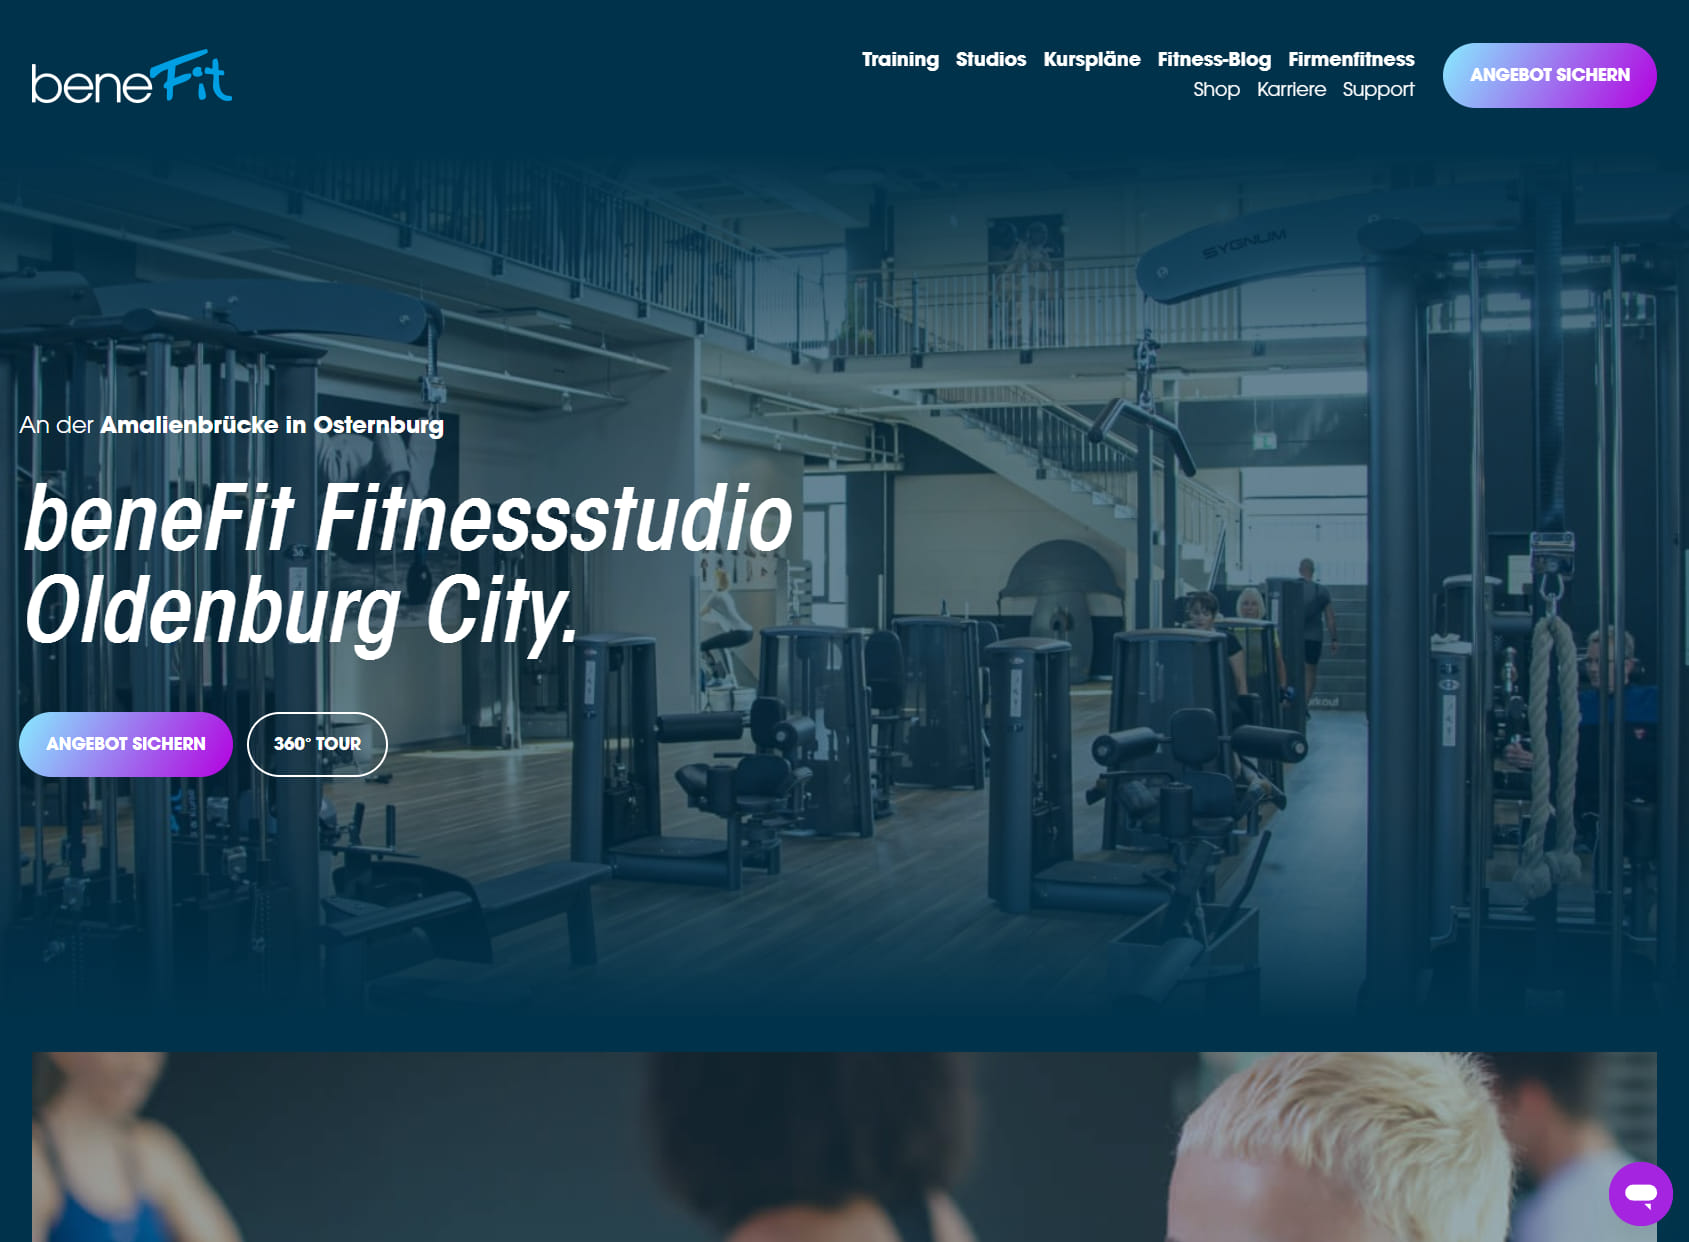 beneFit Fitnessstudio Oldenburg (City)